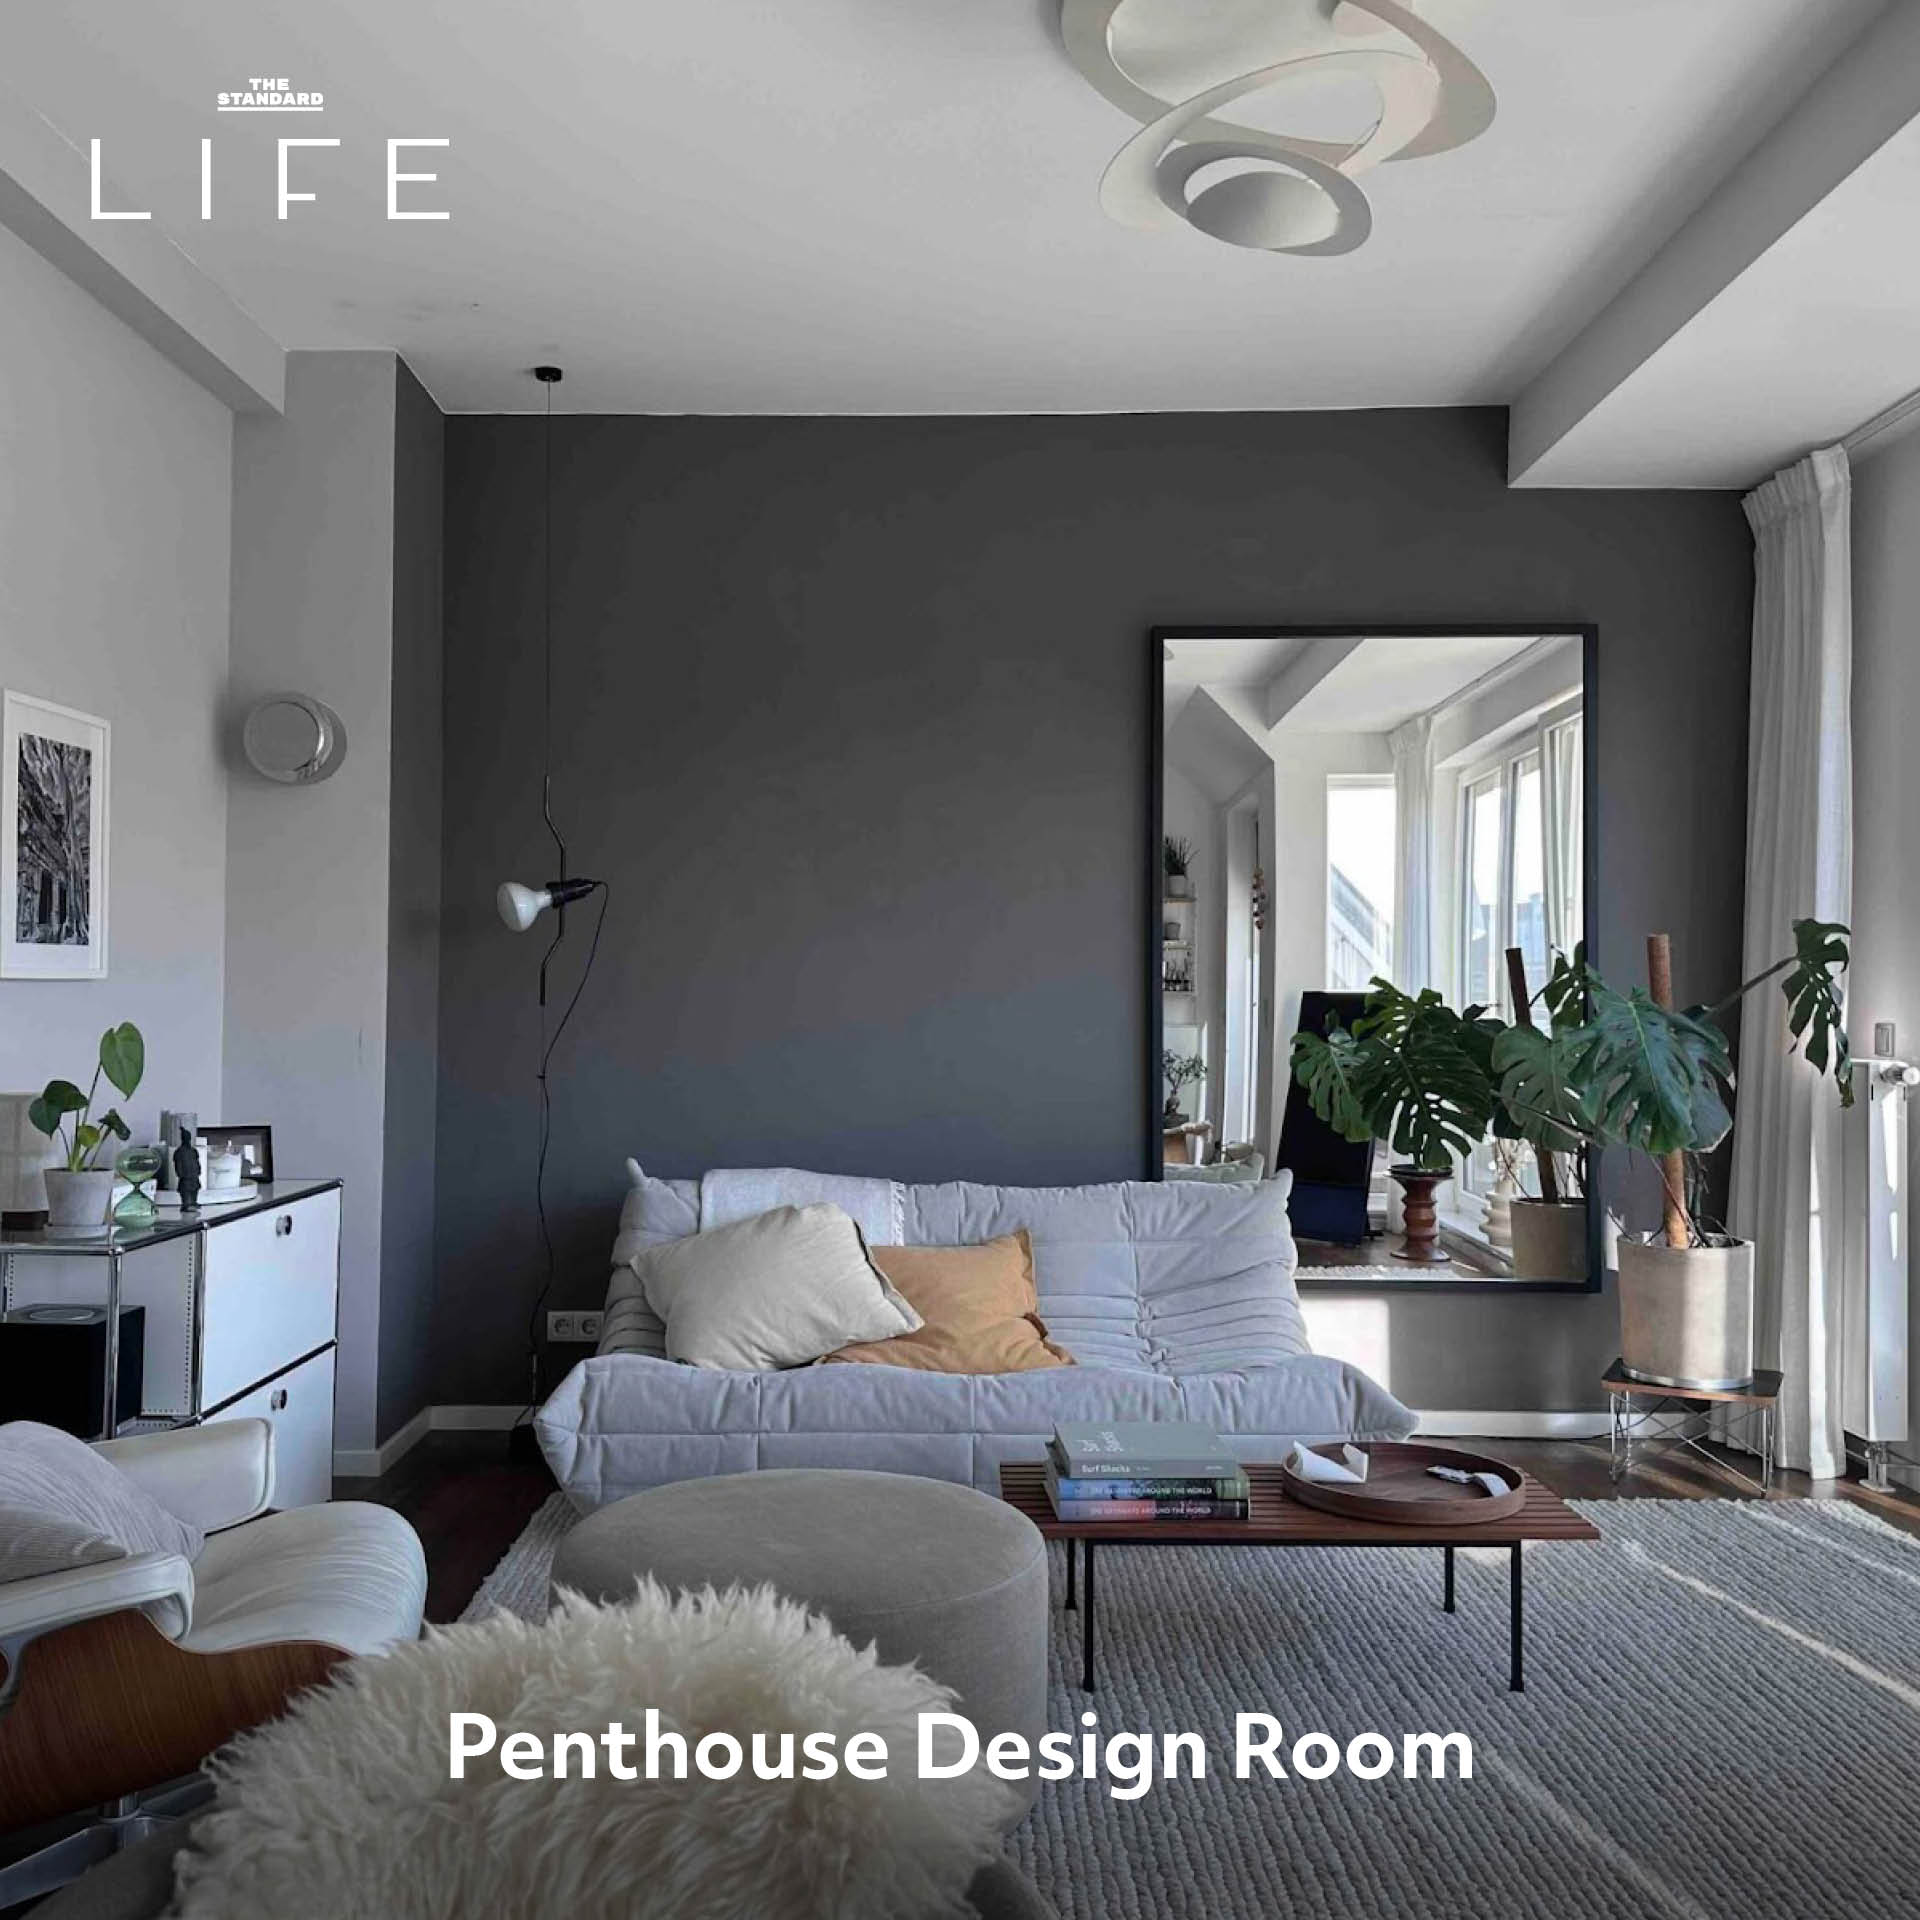 Penthouse Design Room